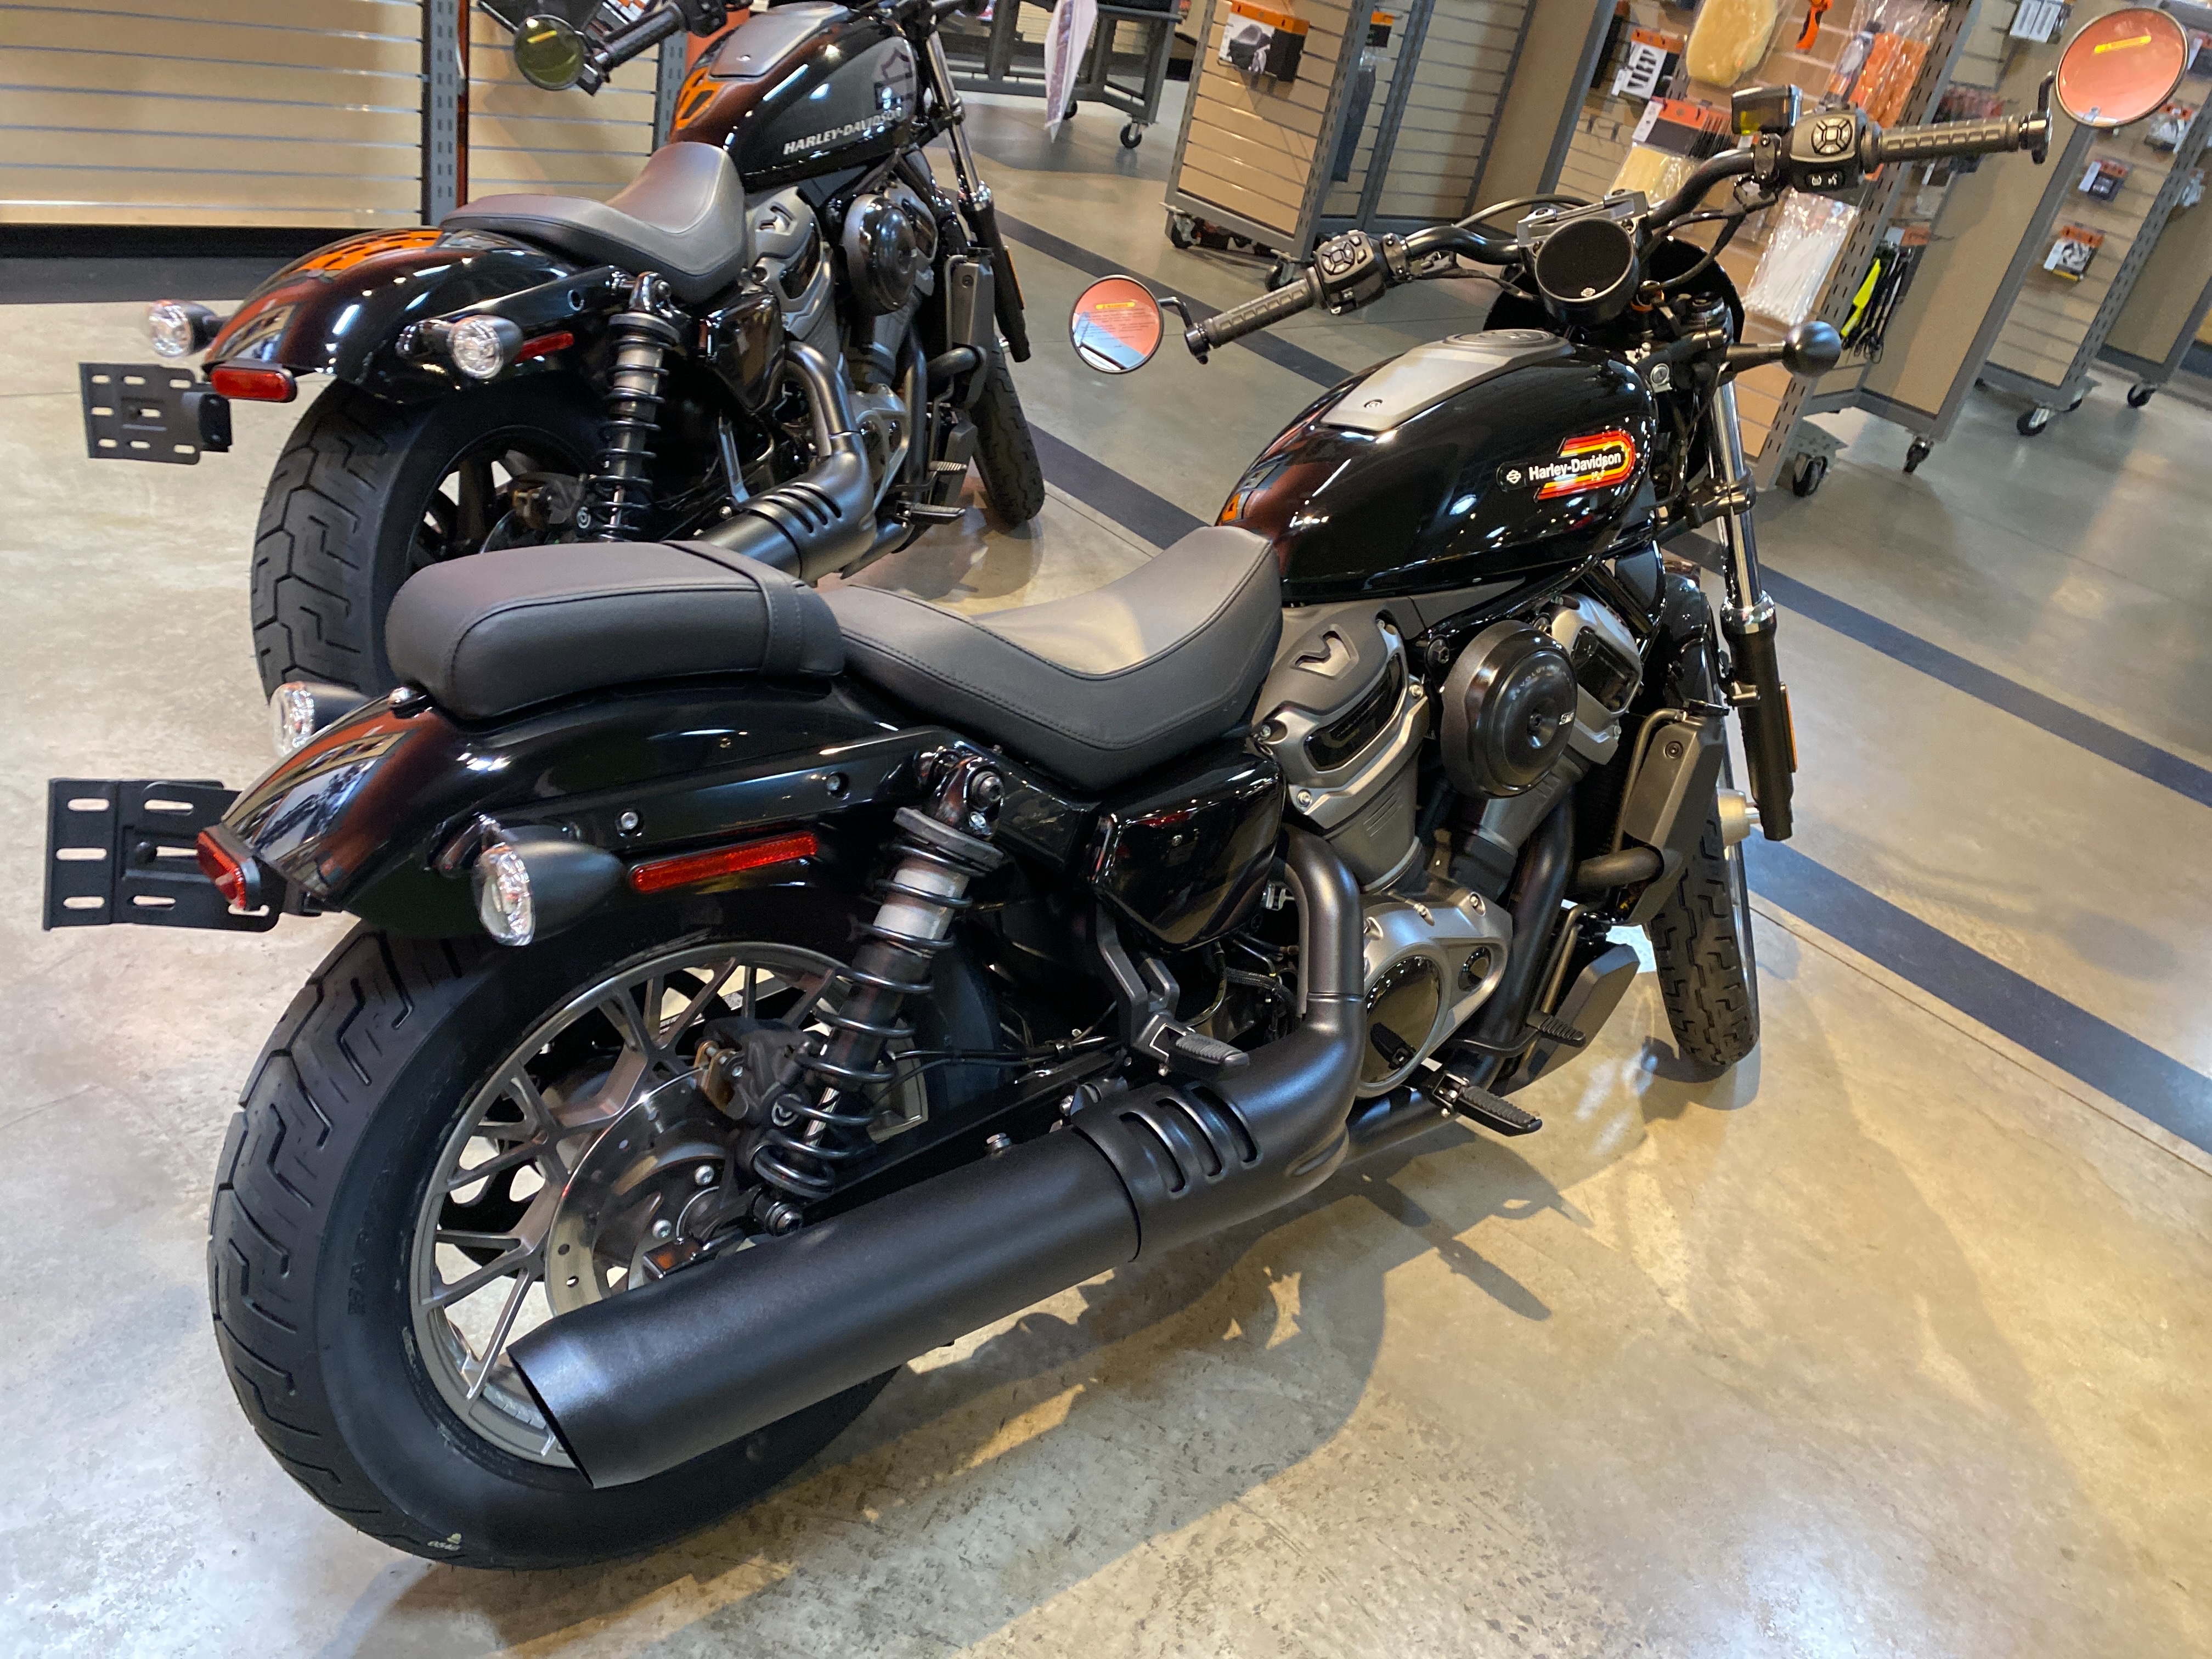 2023 Harley-Davidson Sportster Nightster Special at Outpost Harley-Davidson